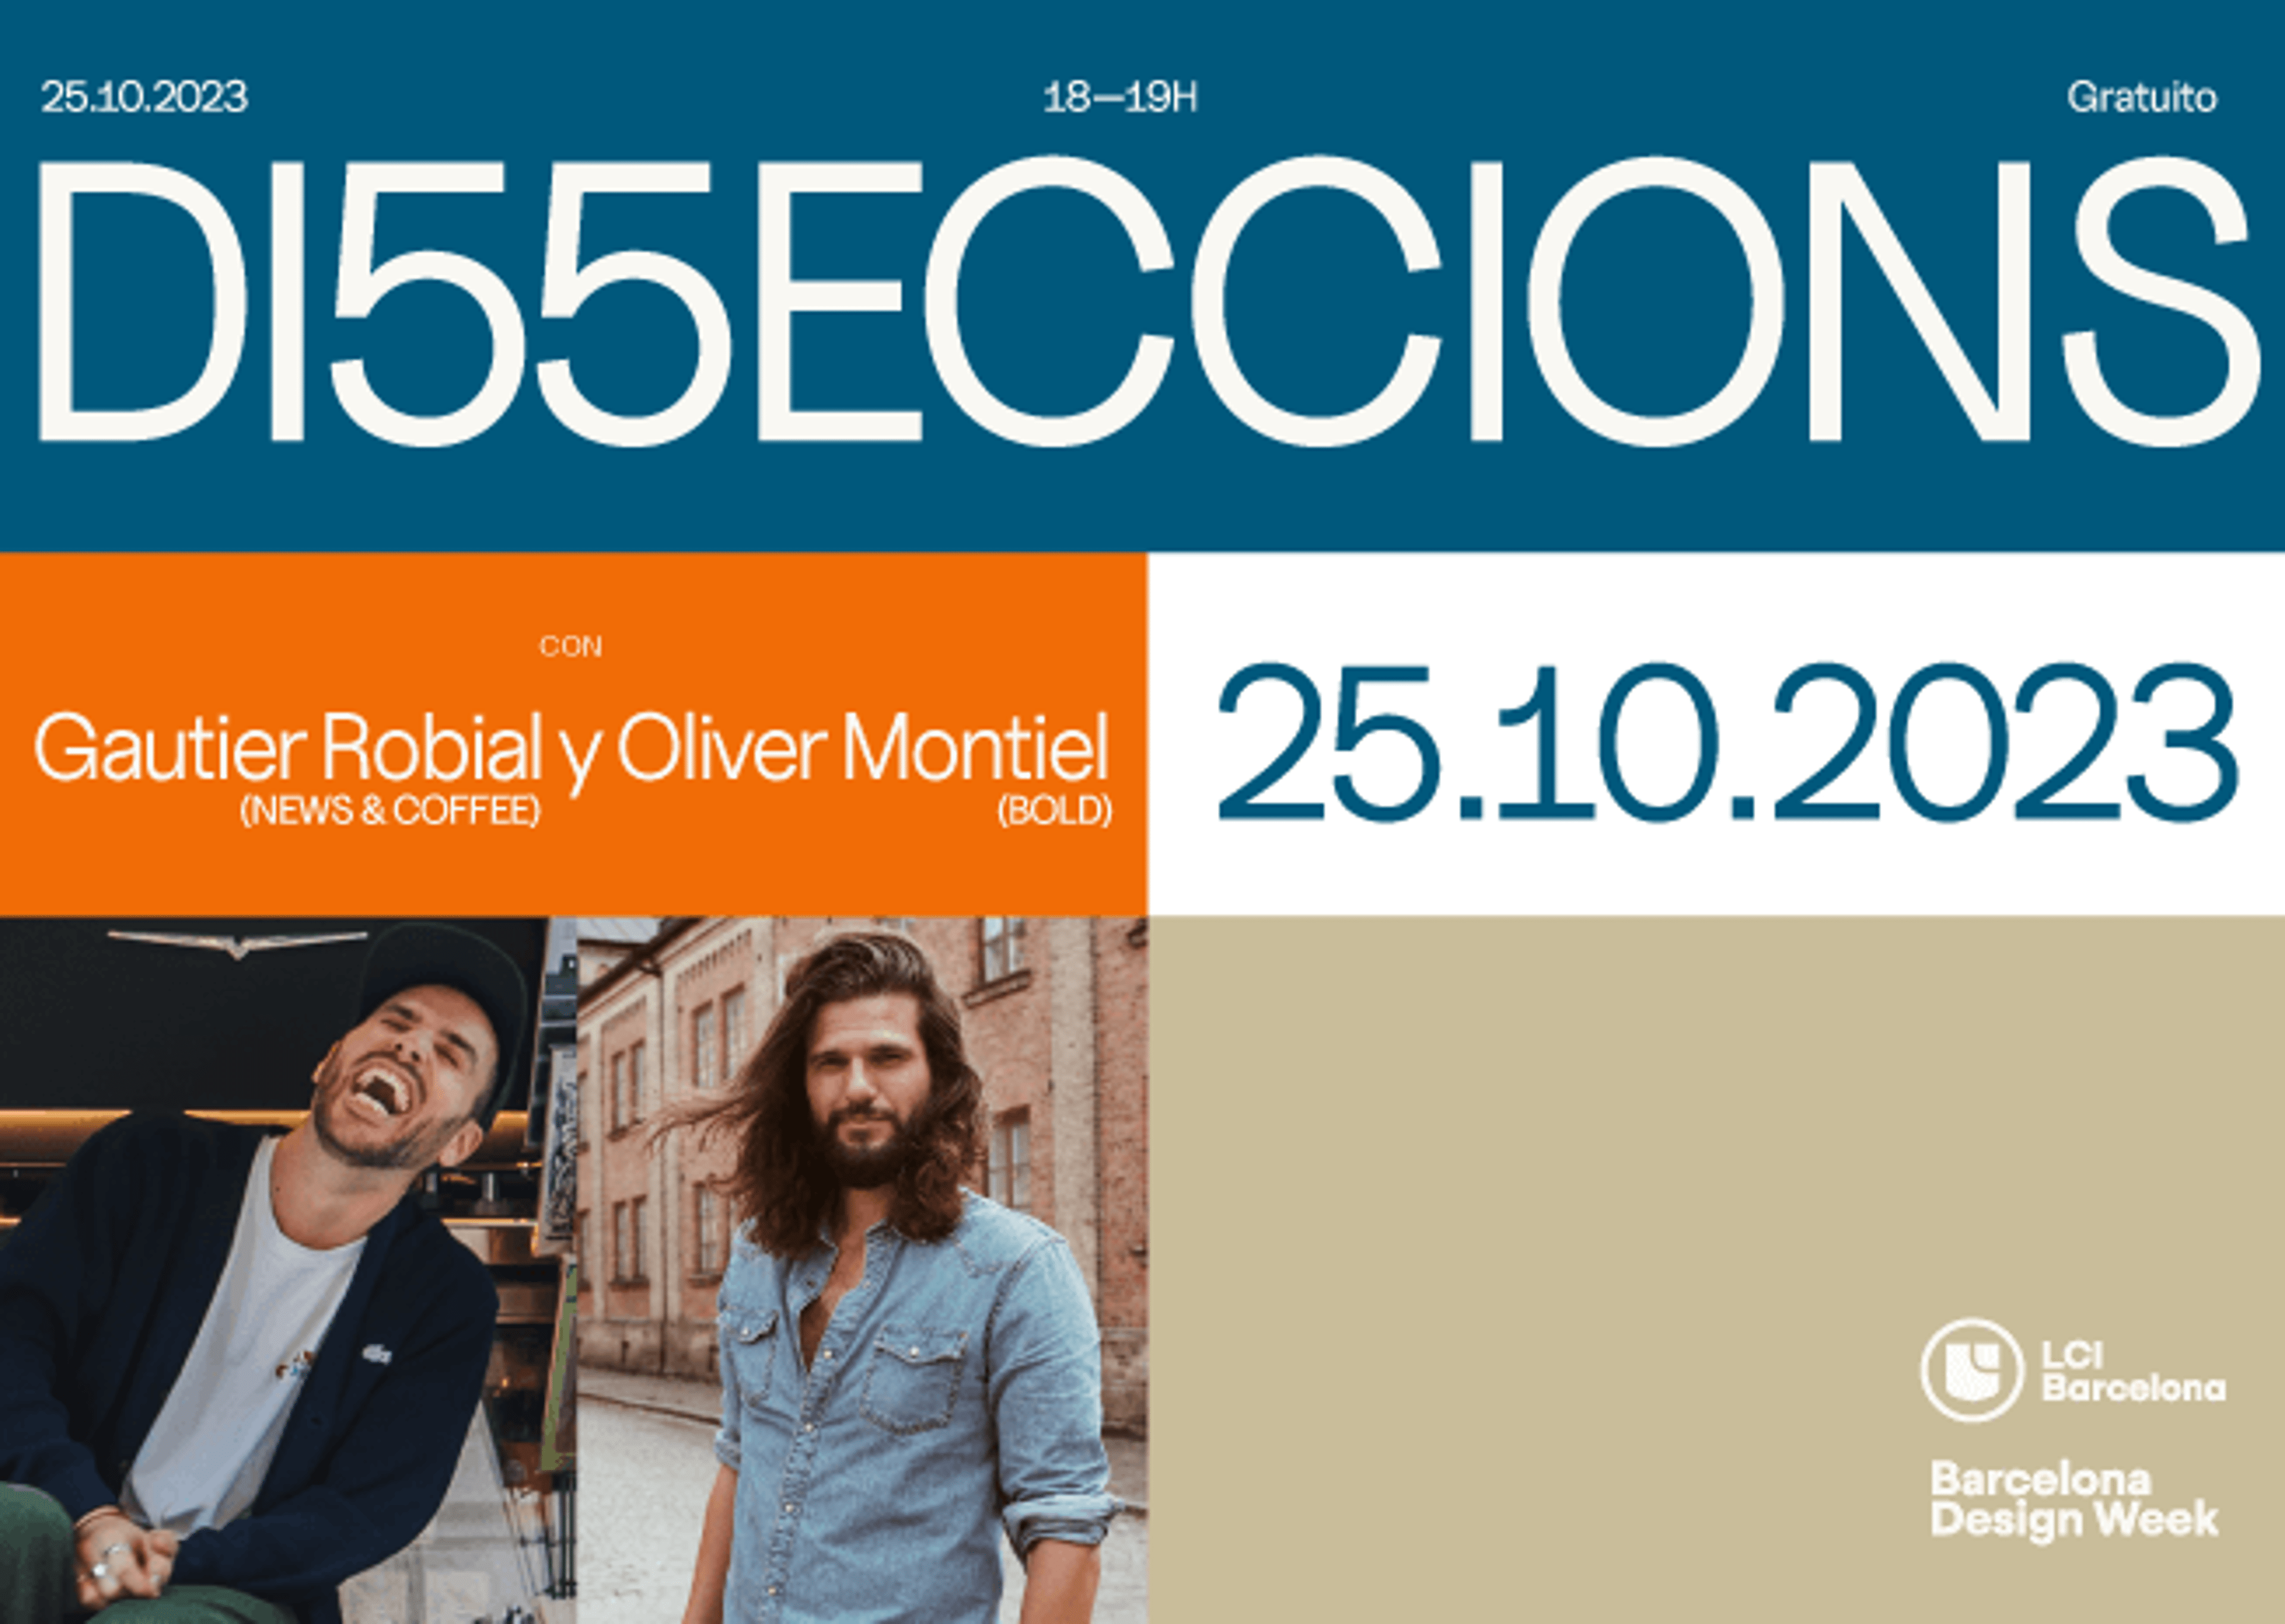 Folleto de 'D15ECCIONS' el 25.10.2023, con los oradores Gautier Robial y Oliver Montiel, parte de la Semana del Diseño de Barcelona.